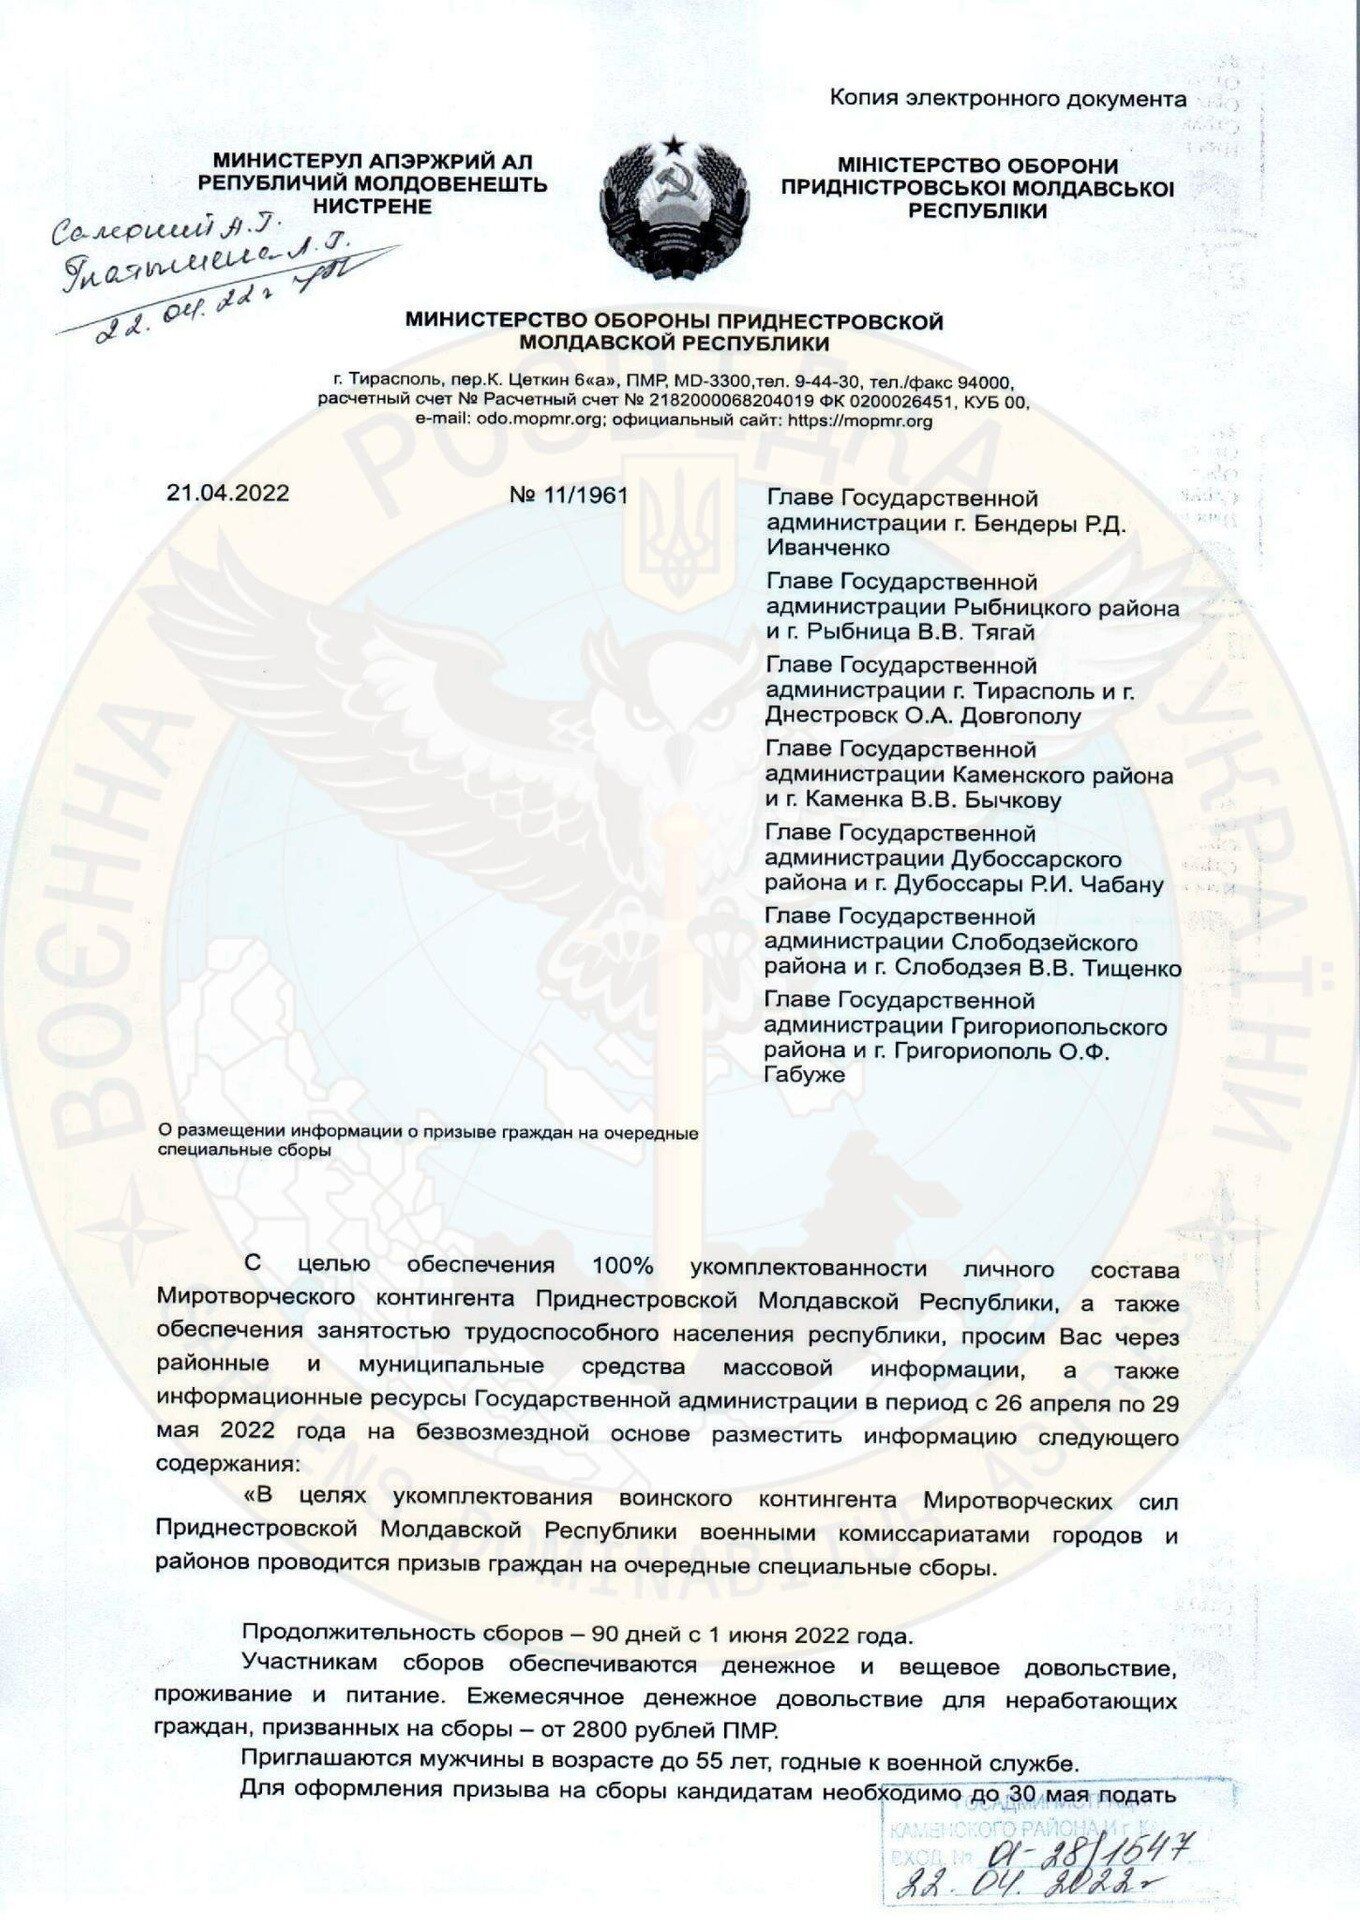 В Приднестровье объявили военные сборы